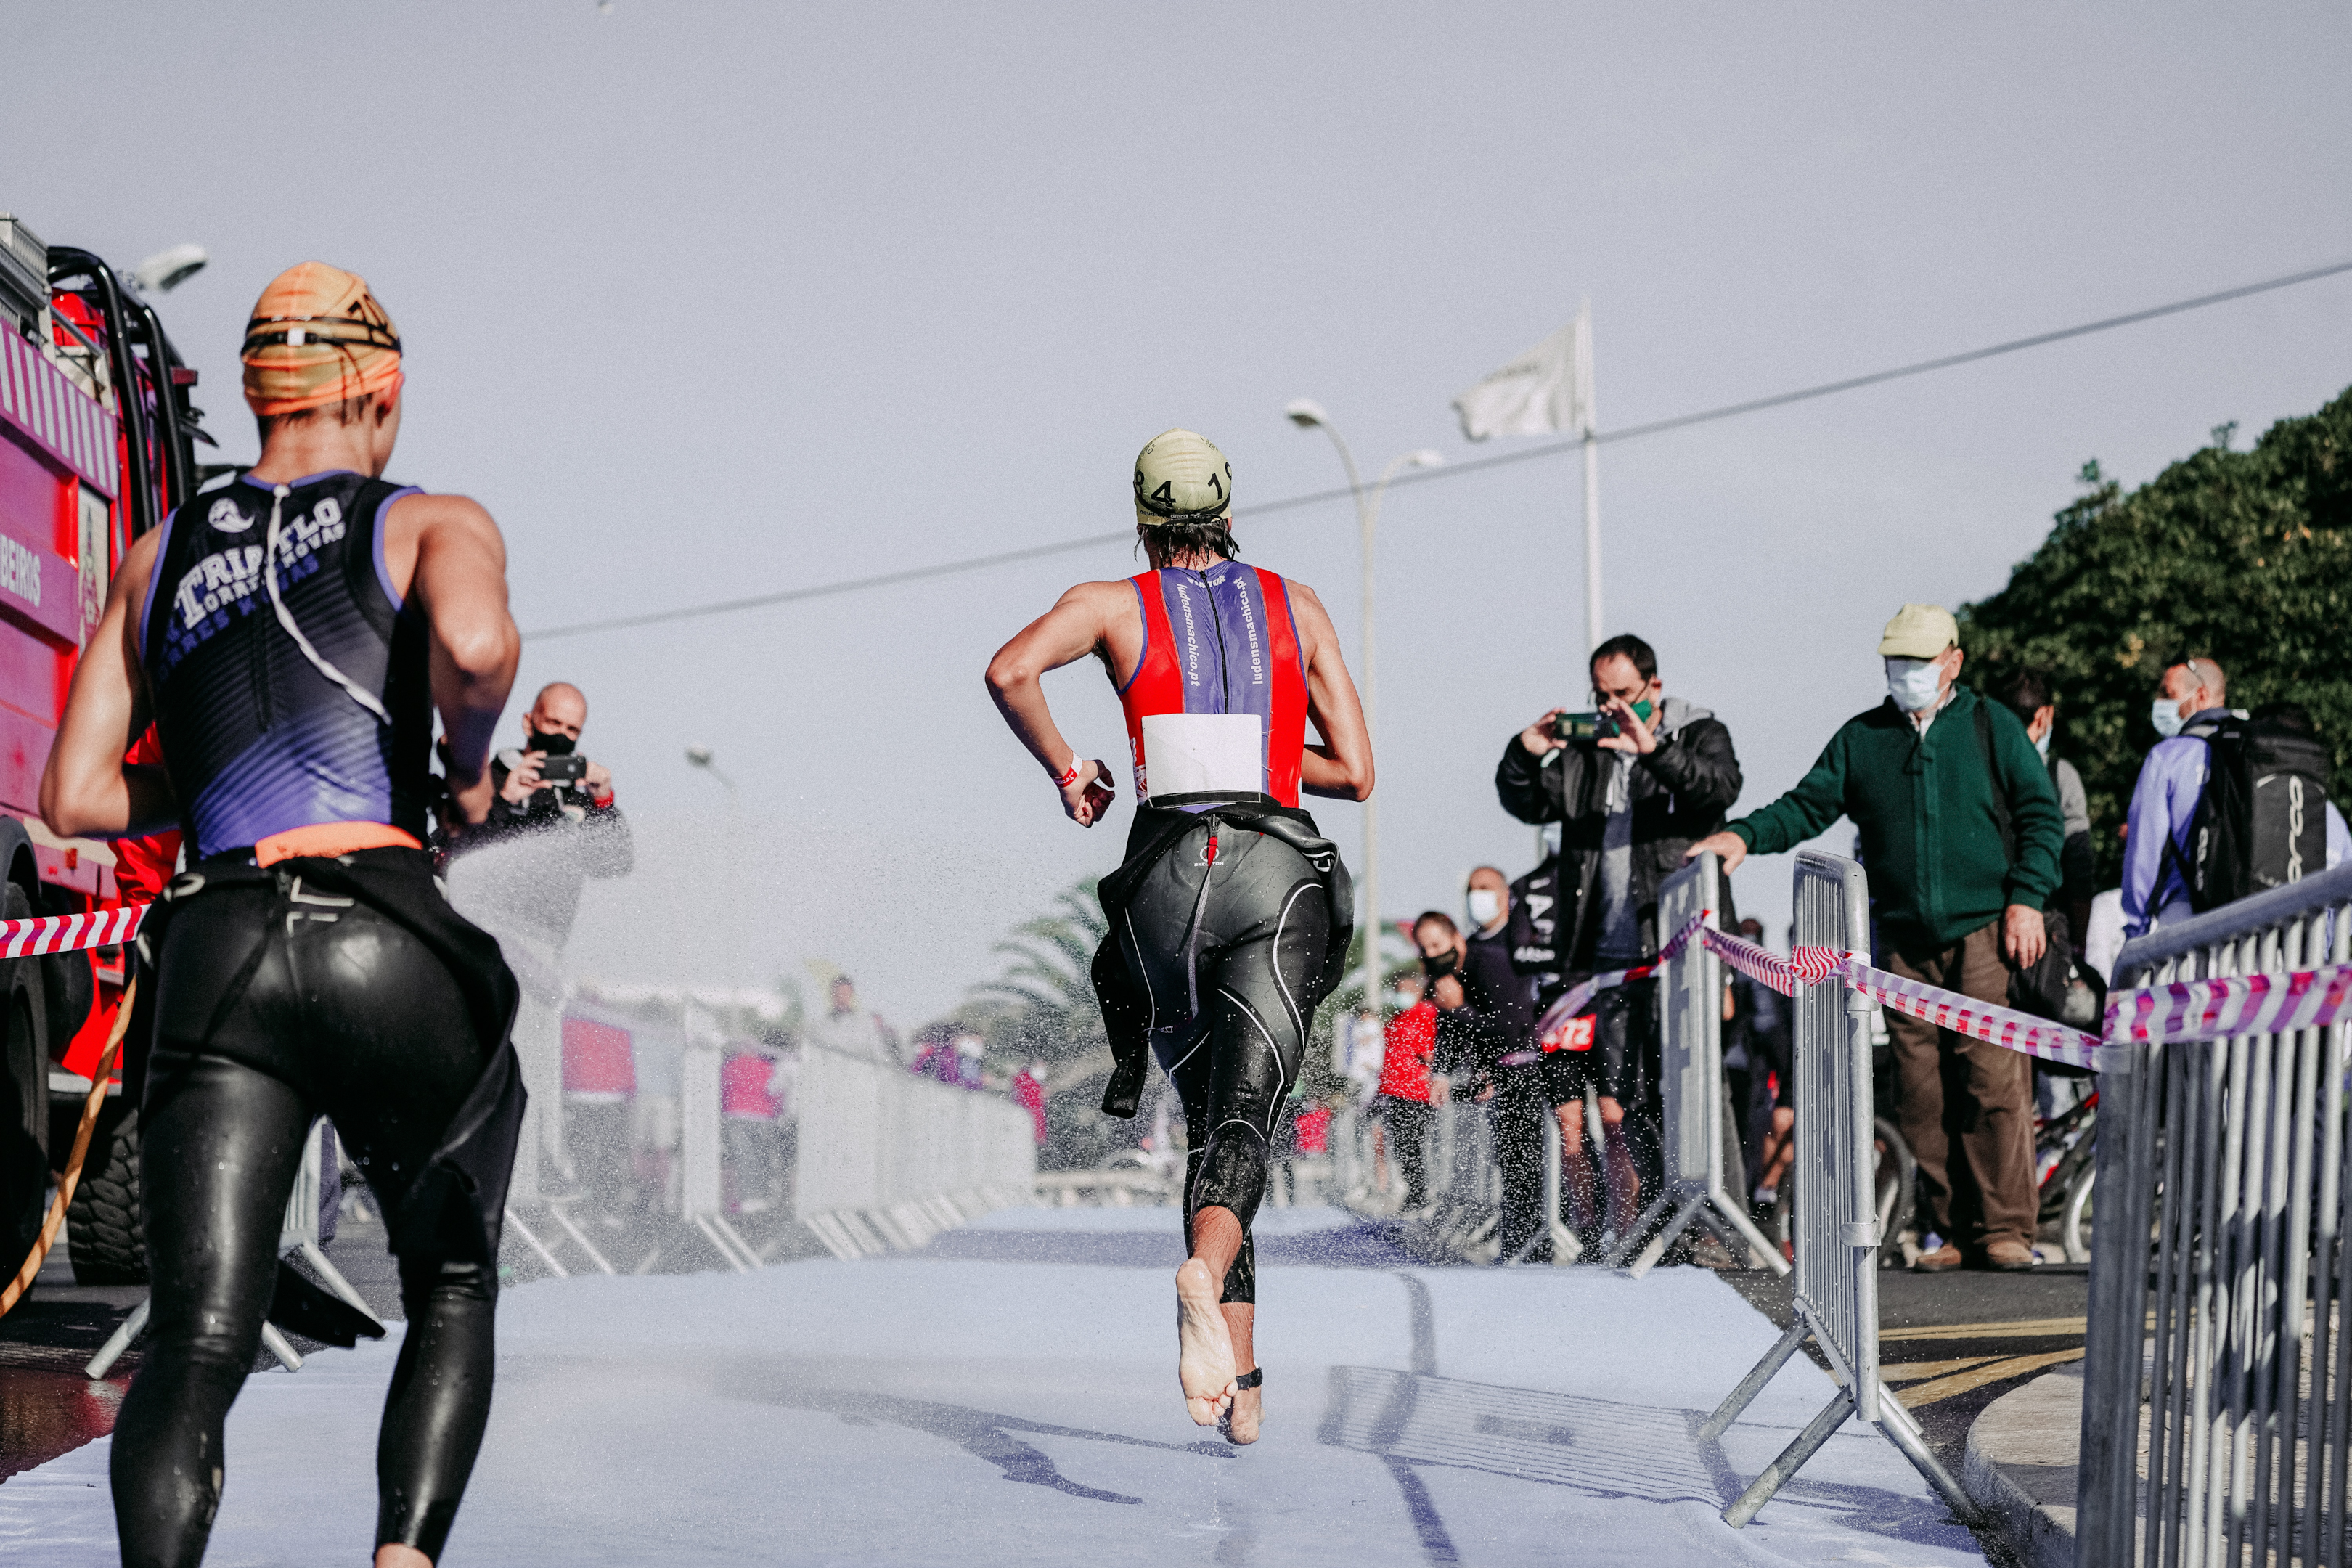 Atletas iniciando prova de corrida após a natação. Foto de RUN 4 FFWPU, Pexels.